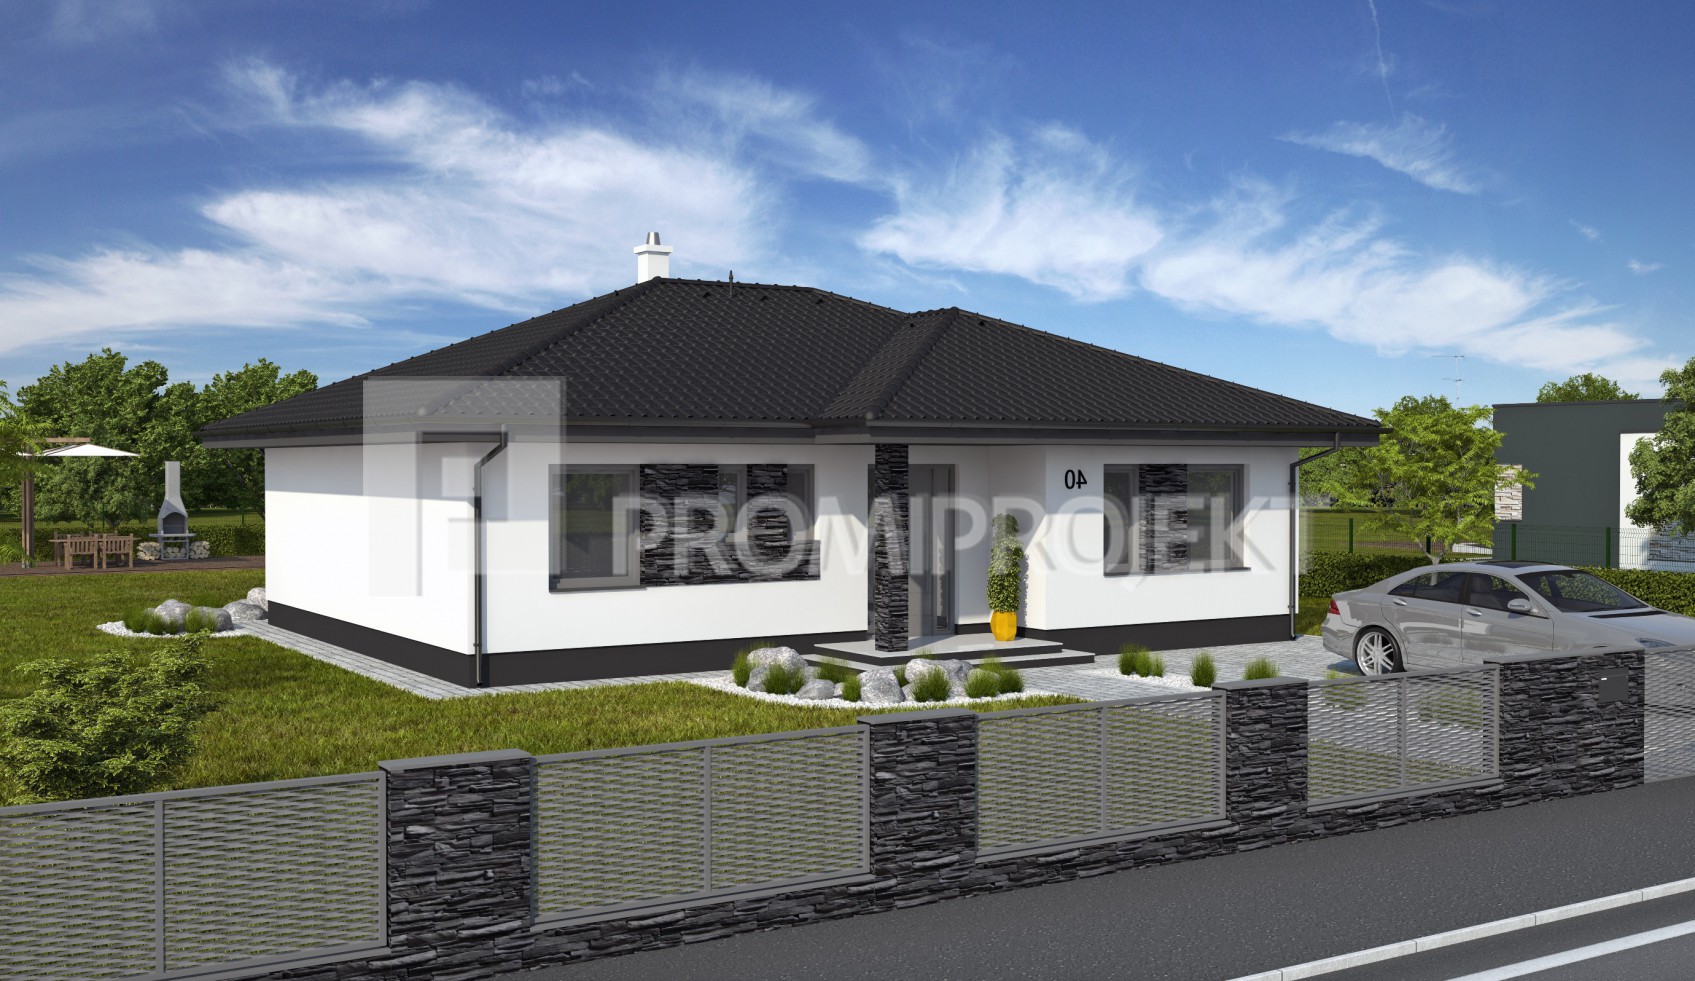 Projekt pre bungalov strednej veľkostnej kategórie Laguna 40, vizuál, zrkadlový 2